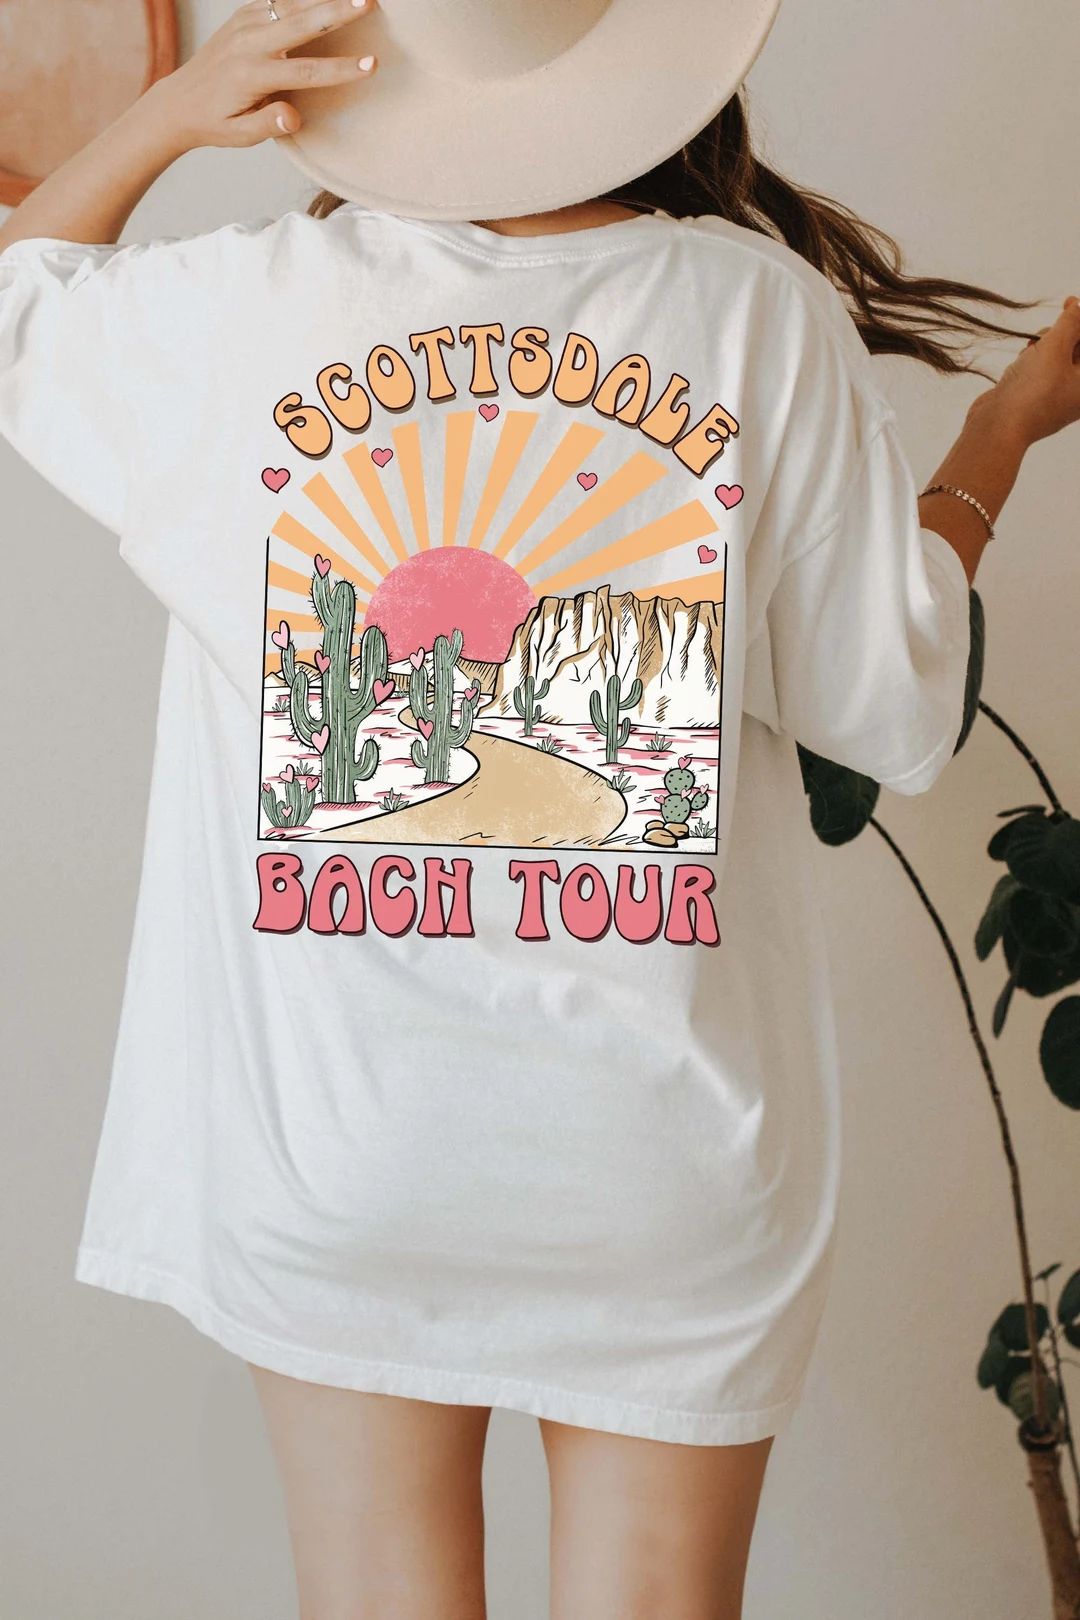 Scottsdale Bachelorette Party Shirts Desert Bachelorette Shirts Dazed and Engaged Bachelorette Pa... | Etsy (US)